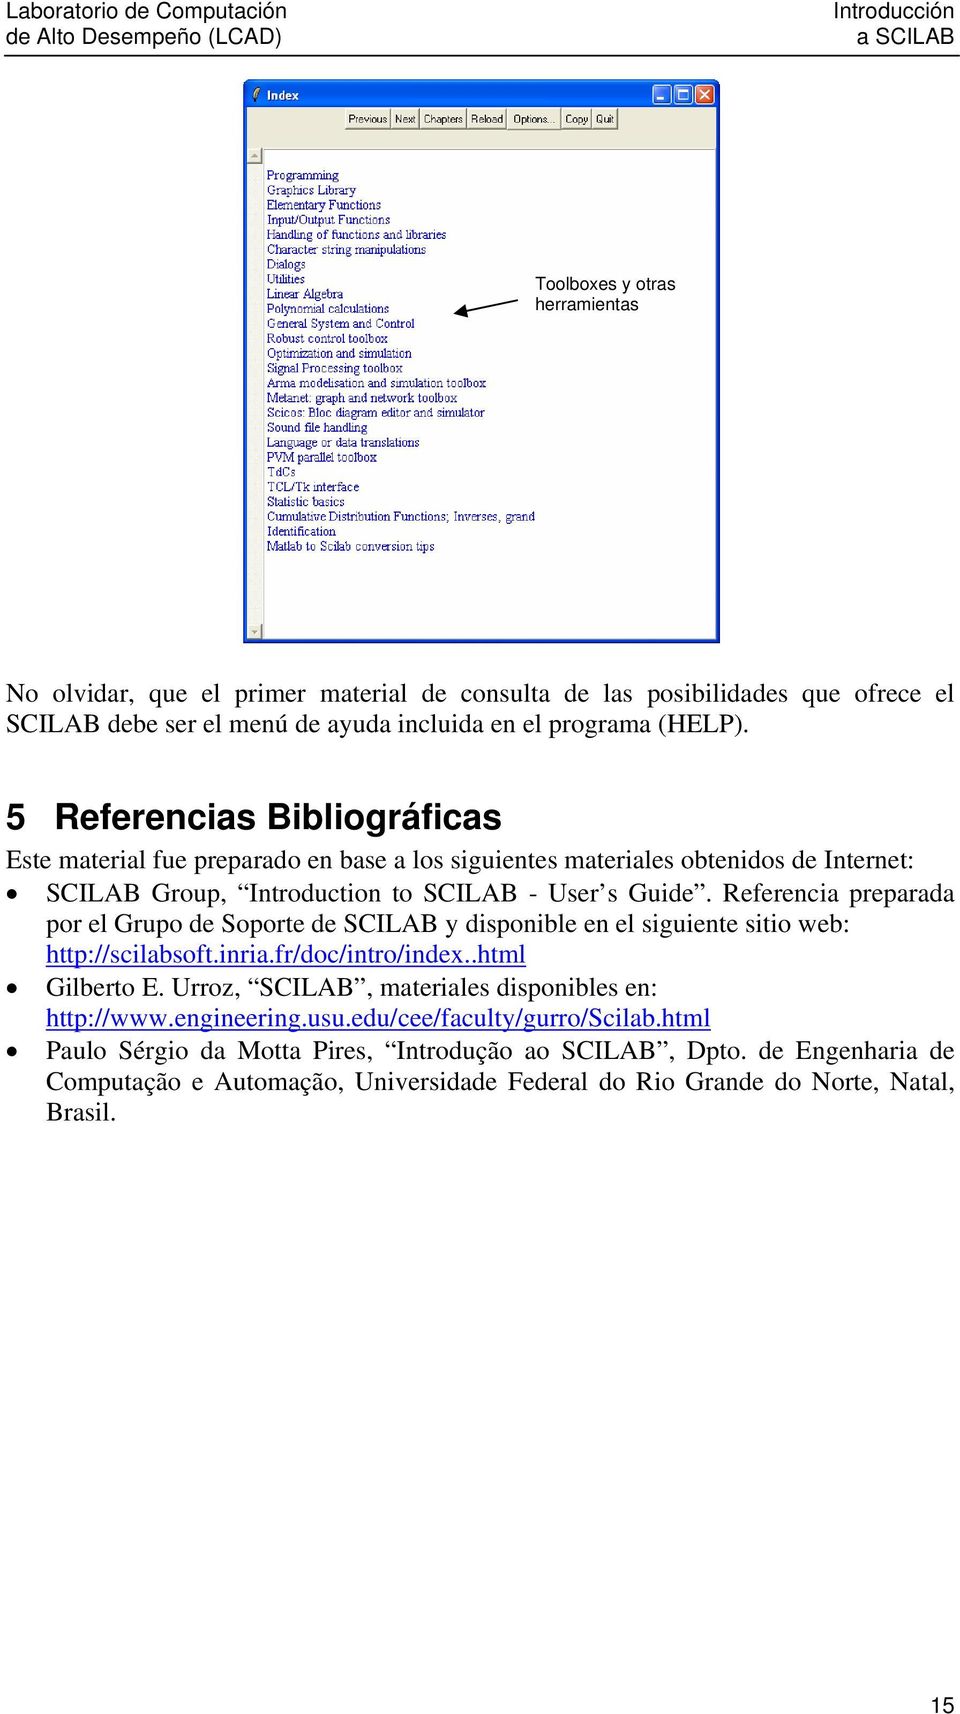 Referencia preparada por el Grupo de Soporte de SCILAB y disponible en el siguiente sitio web: http://scilabsoft.inria.fr/doc/intro/index..html Gilberto E.